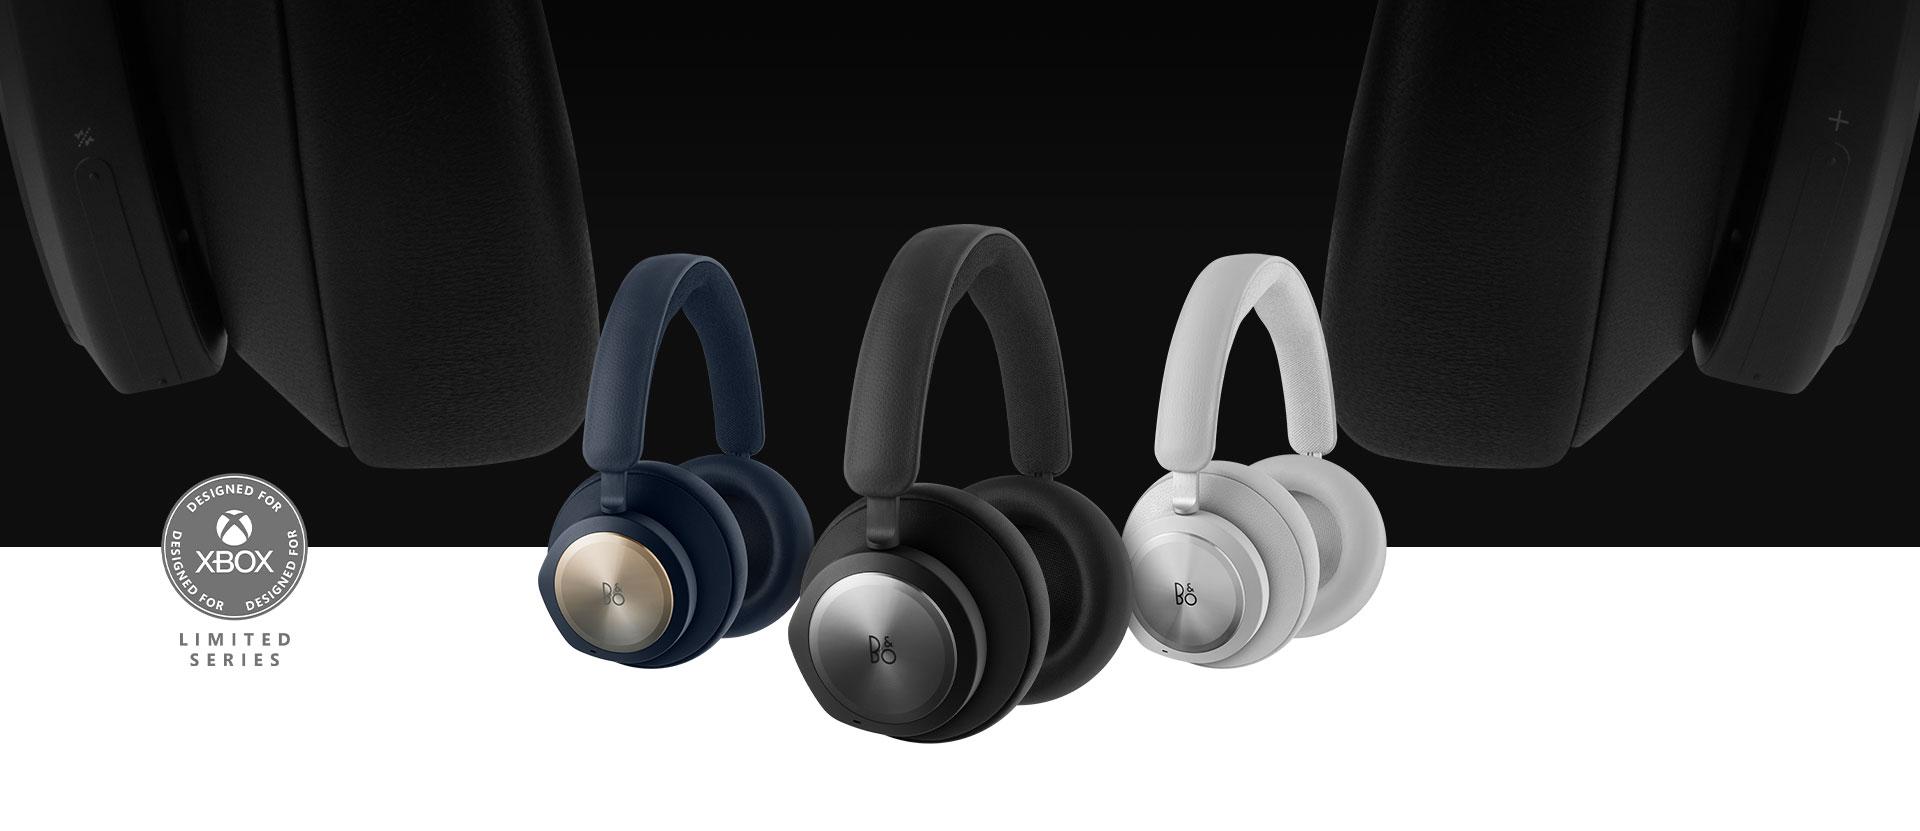 Designed for Xbox，Band and Olufsen 黑色耳機在前方，後方是灰色和海軍藍耳機